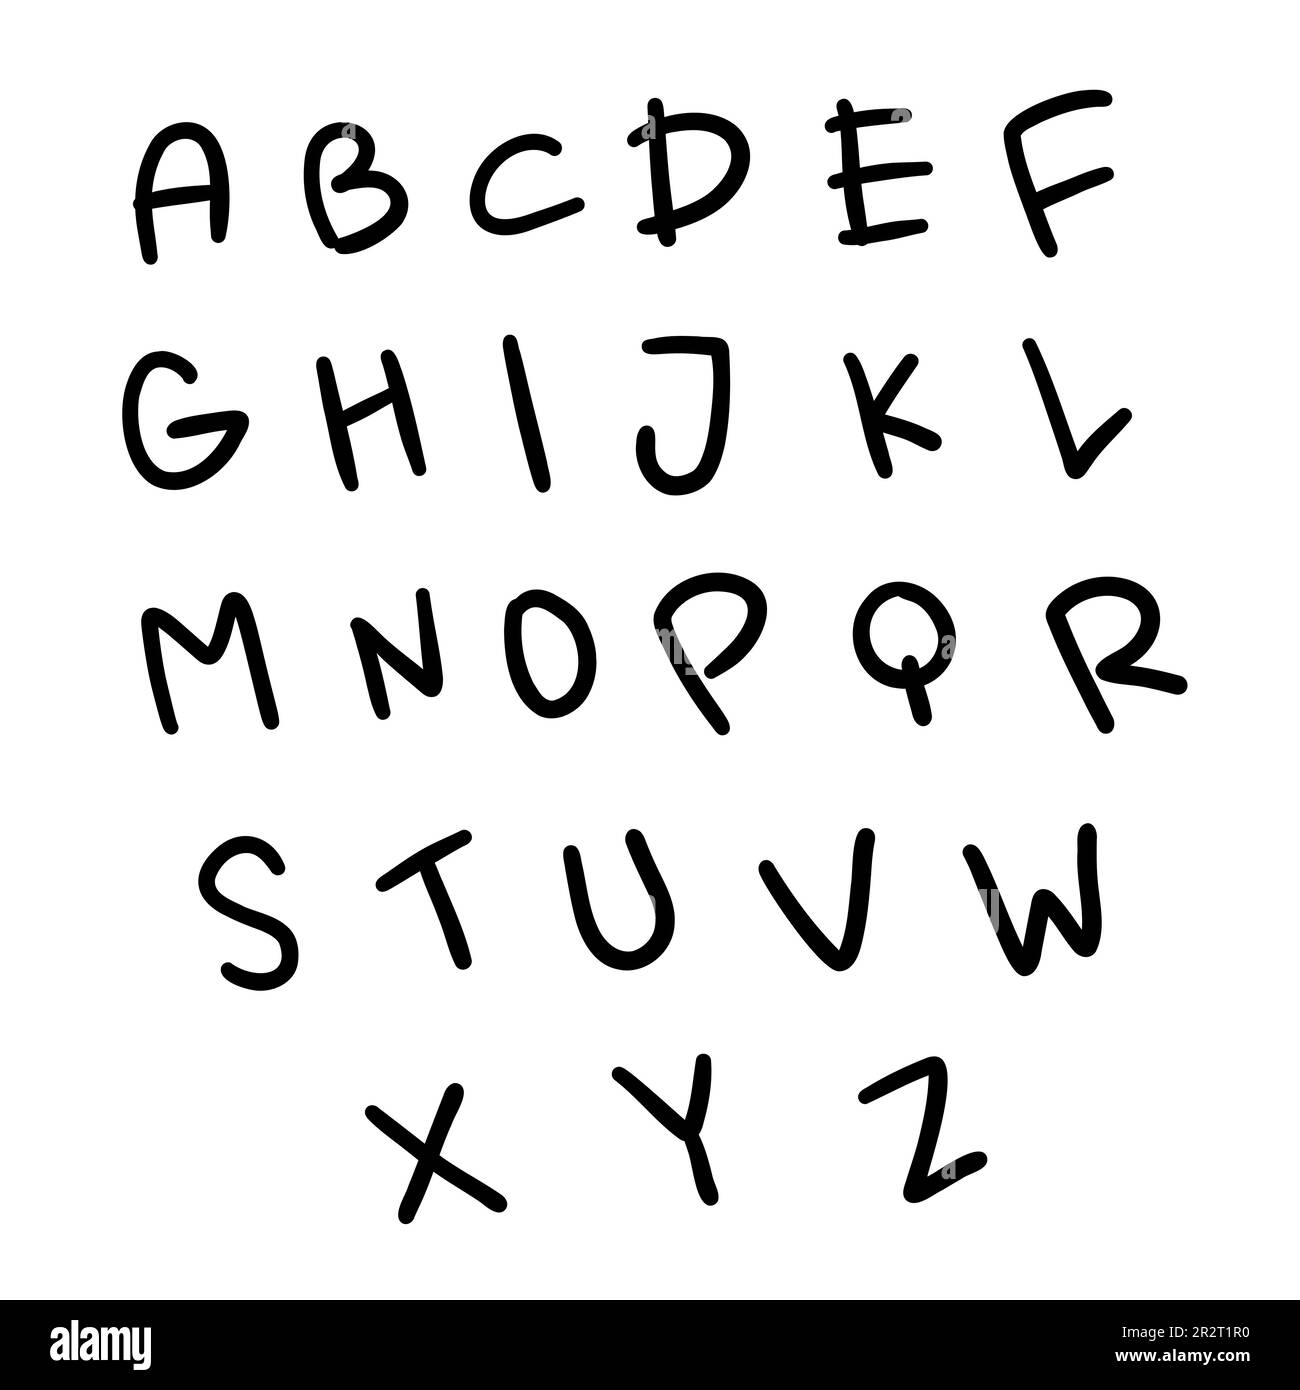 Infantil negro inglés alfabeto latino abc fuente A a Z. Ilustración vectorial en estilo doodle dibujado a mano aislado sobre fondo blanco. Para decorar, c Ilustración del Vector